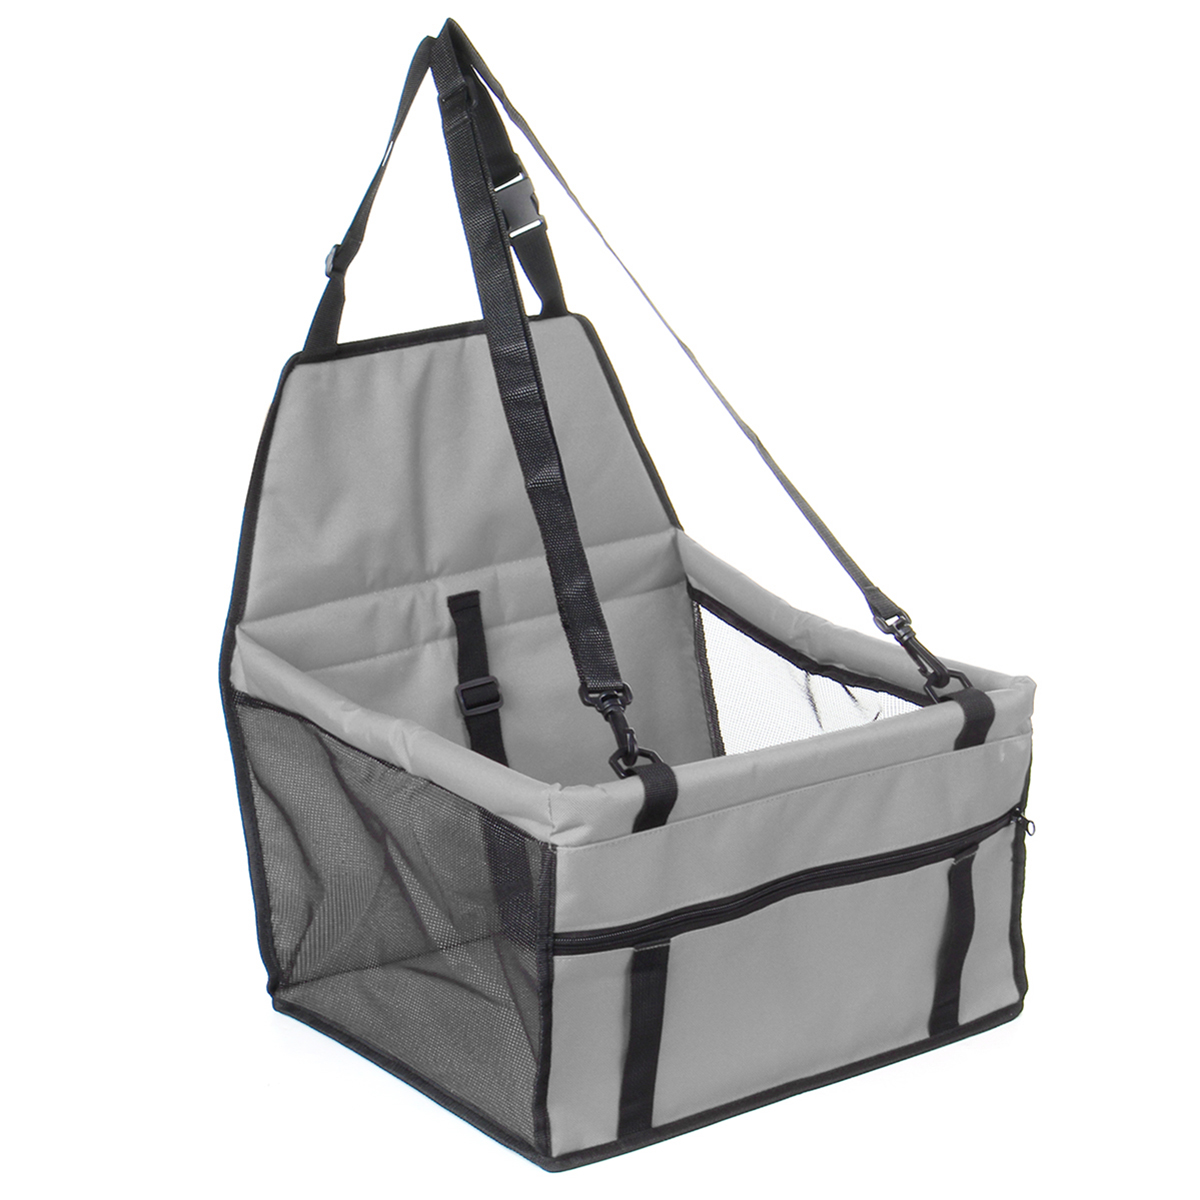 Portable-Pet-Dog-Car-Carrier-Seat-Bag-Seat-Belt-Booster-Waterproof-Basket-Safety-Mesh-Hanging-Bag-Pu-1571263-3